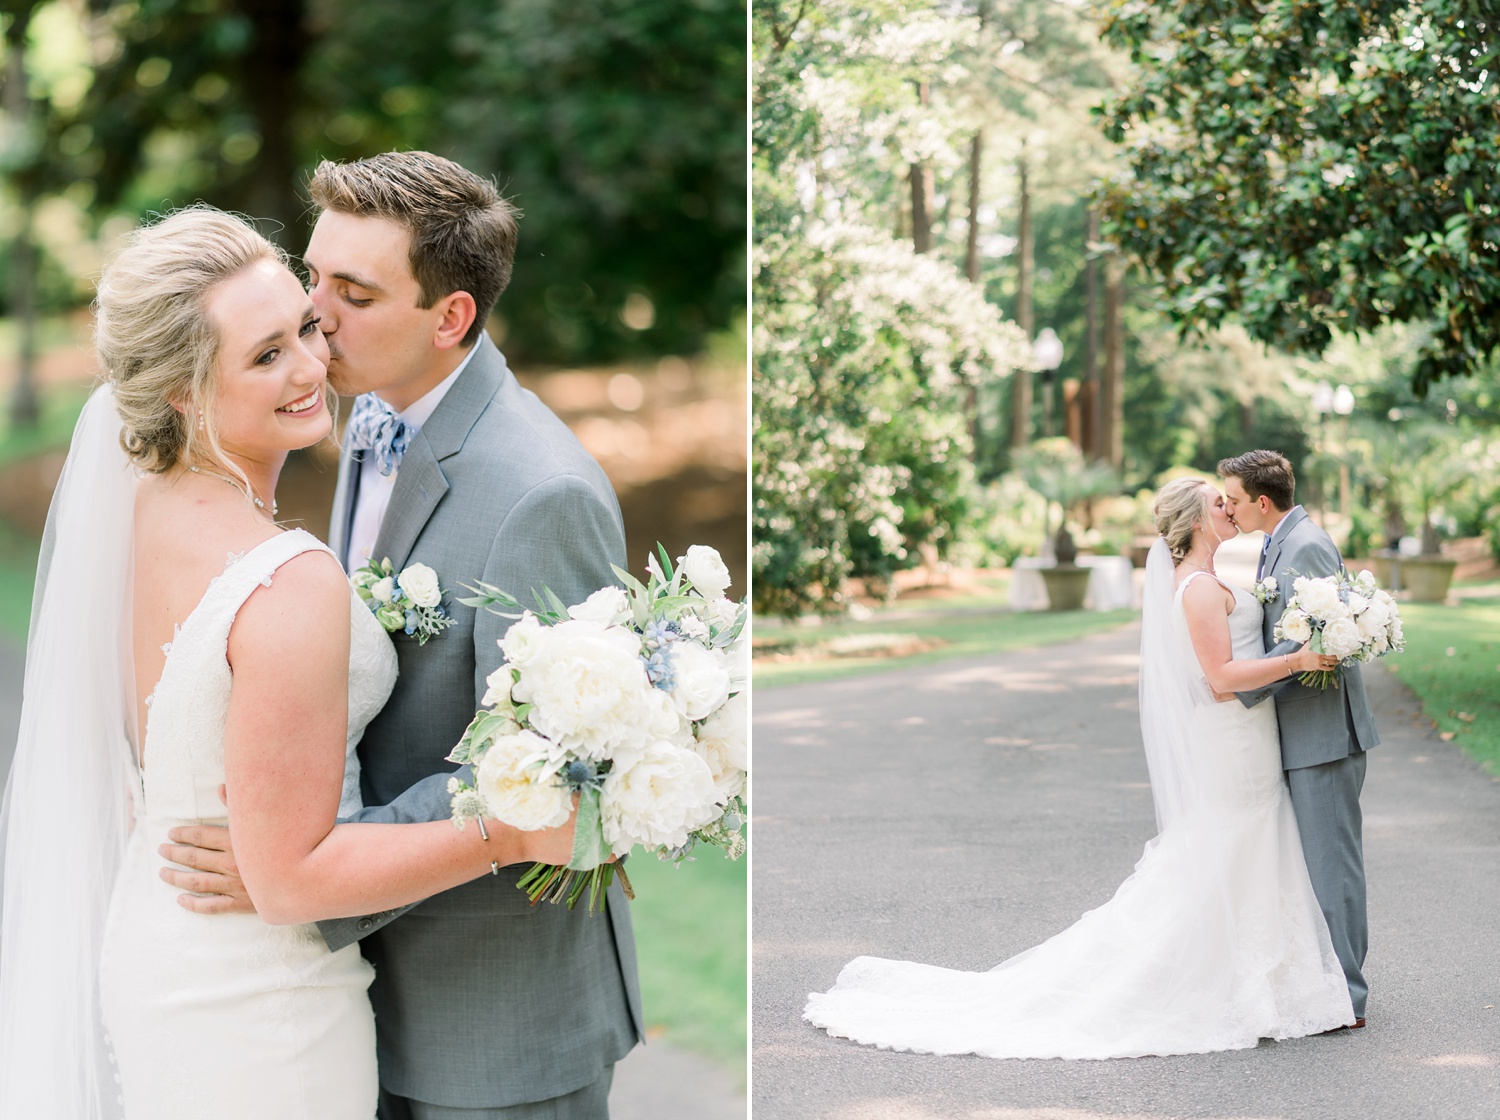 Aldridge Gardens Wedding Day | Birmingham Alabama Wedding Photographers_0019.jpg